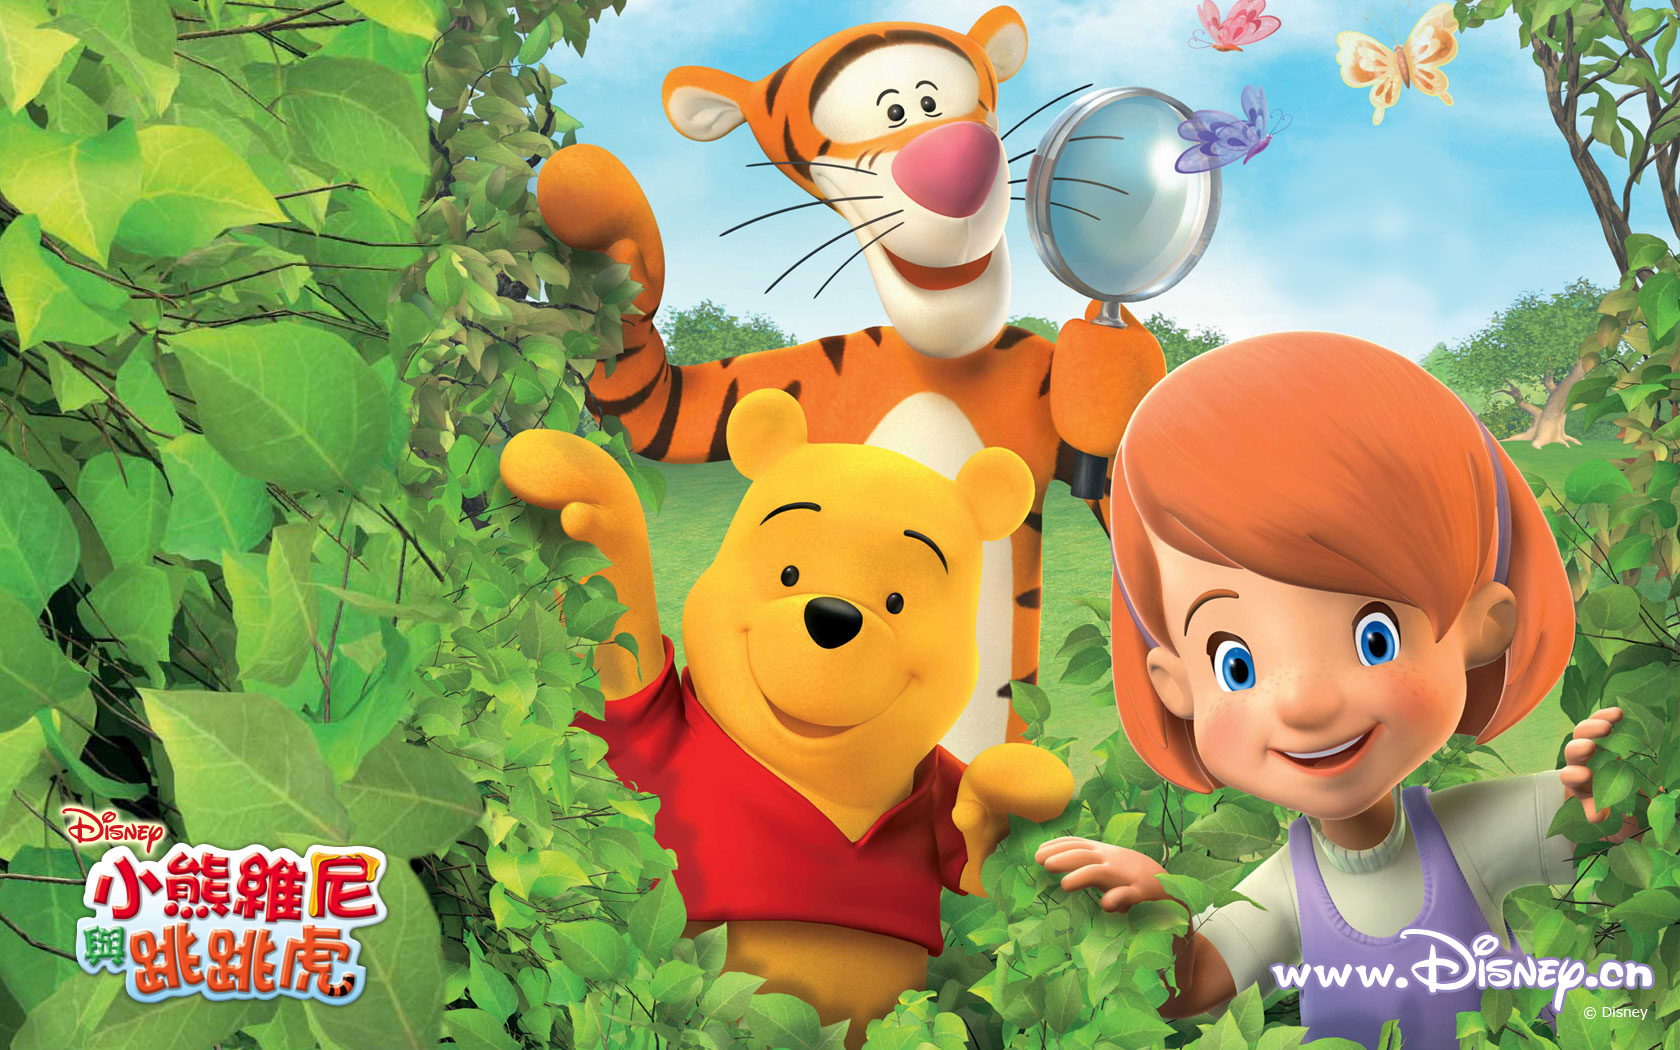 Descarga gratuita de fondo de pantalla para móvil de Winnie The Pooh, Series De Televisión.